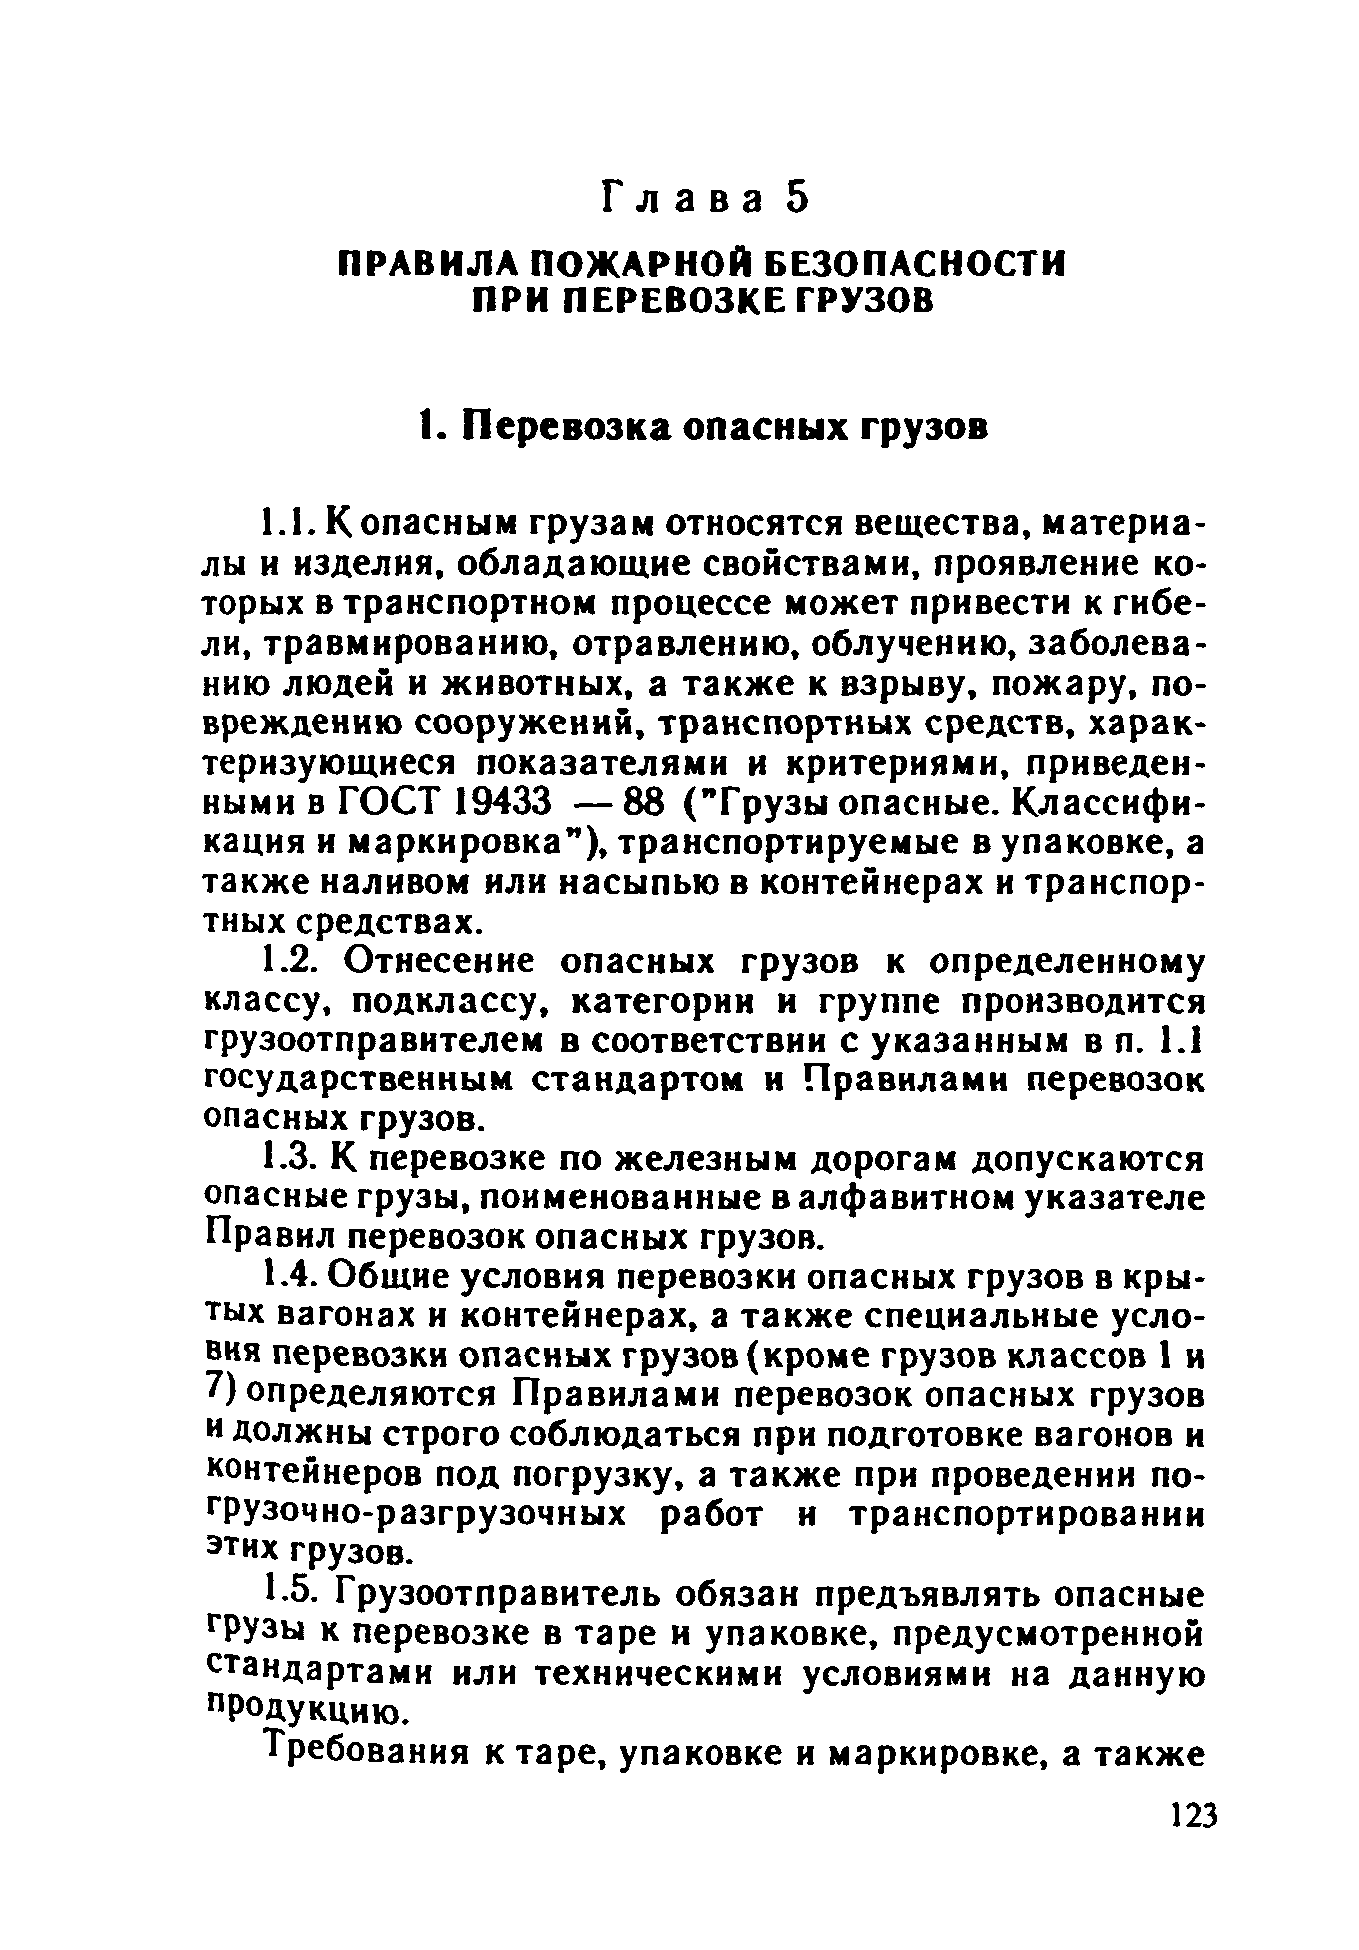 ППБО 109-92